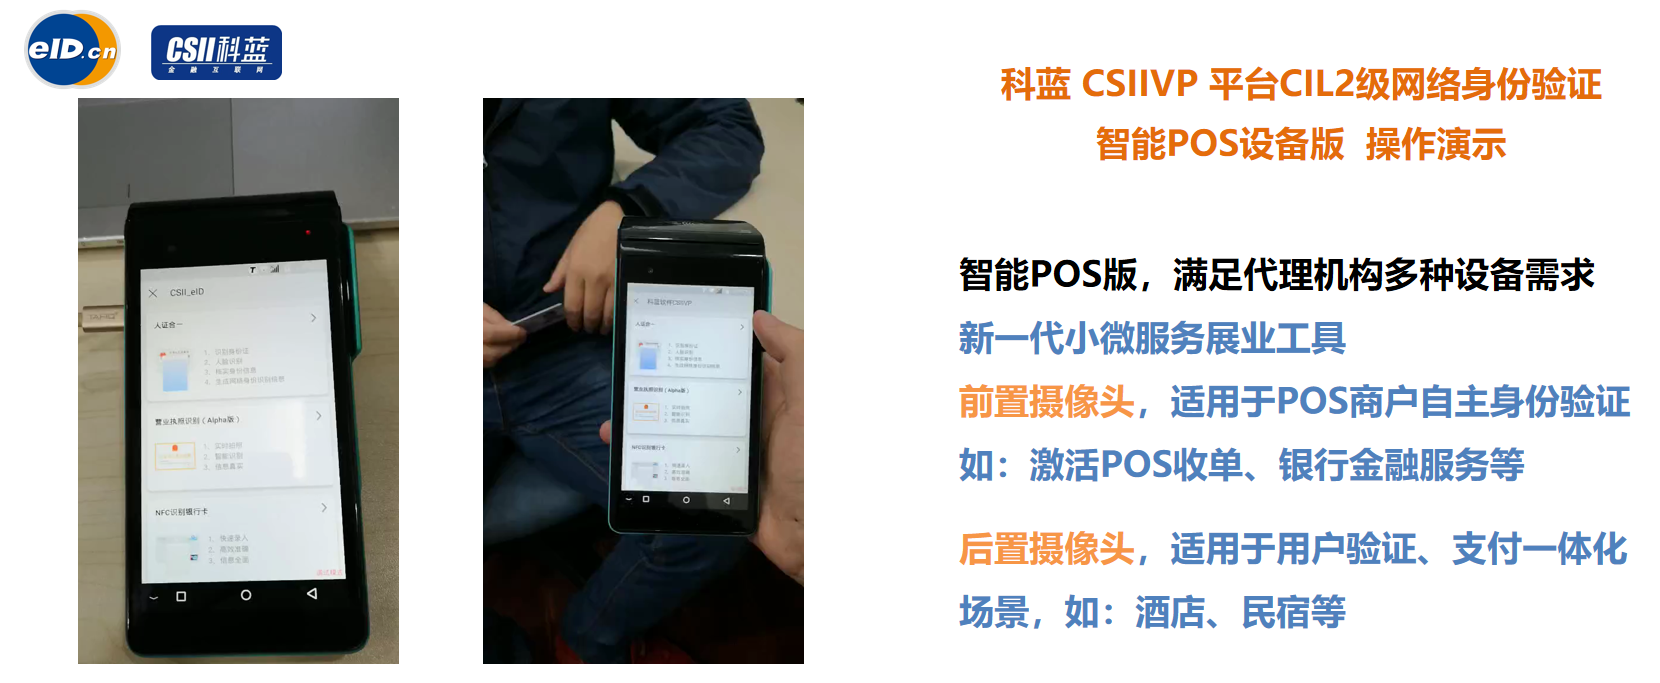 解决方案 | 科蓝CSIIVP eID人证合一网络身份验证平台